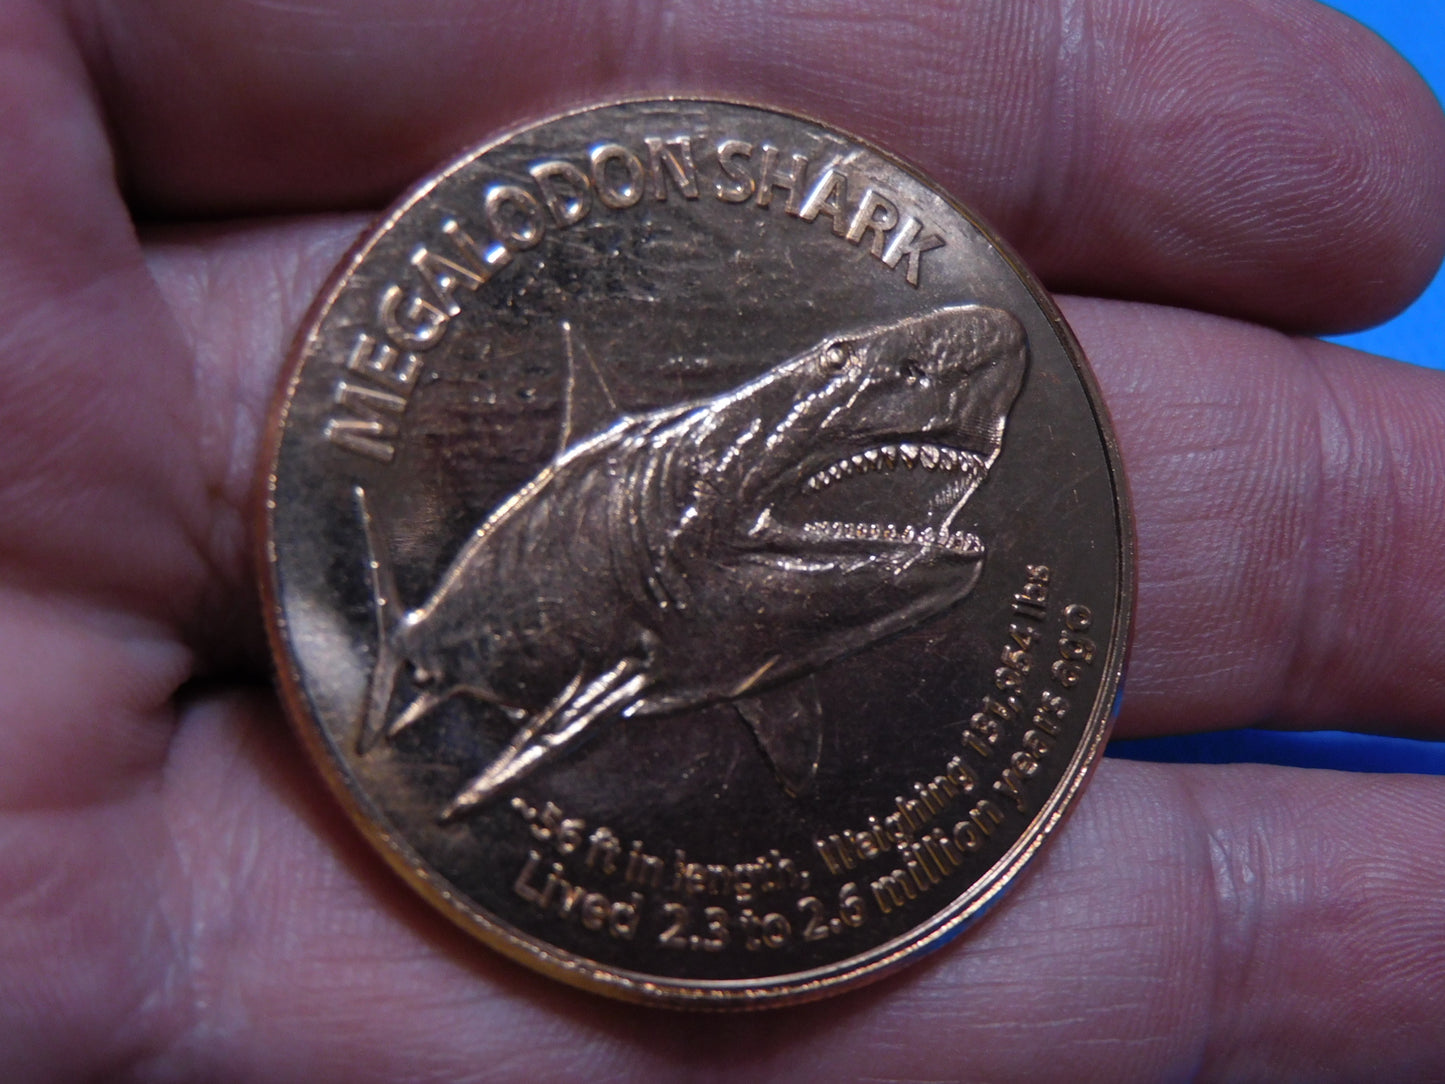 Megalodon Copper Coin